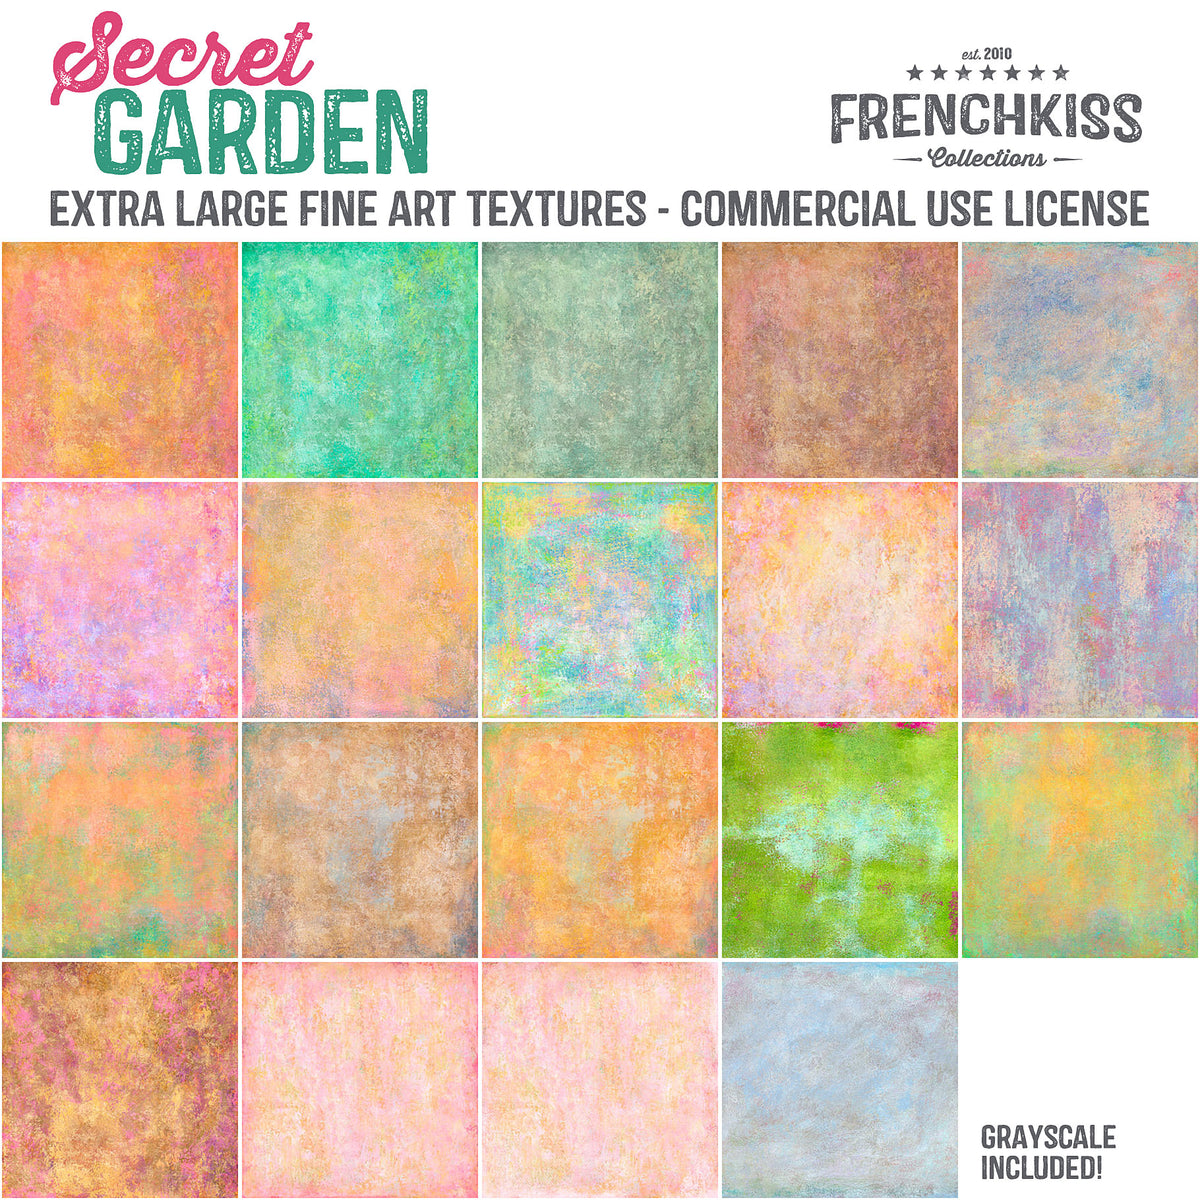 Secret Garden fine art,  painted, commercial license textures.